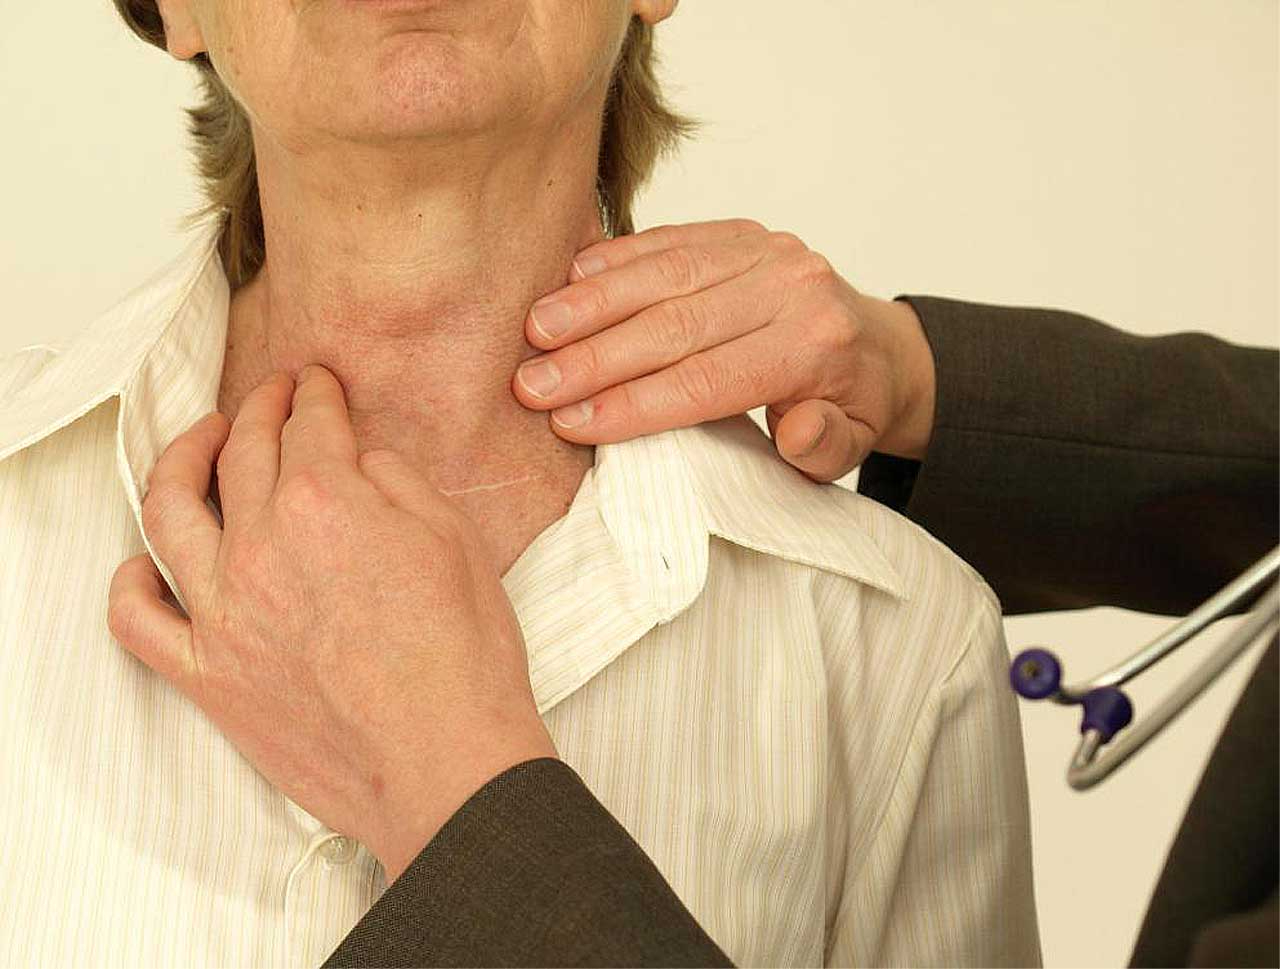 Щитовидная железа лечение у мужчин и профилактика. РПК зитовидной железы симпомы. Заболевания щитовидной железы. Ракщитовиднойжелезысимтомы. Симптомы.рааащитовидной желрзы.